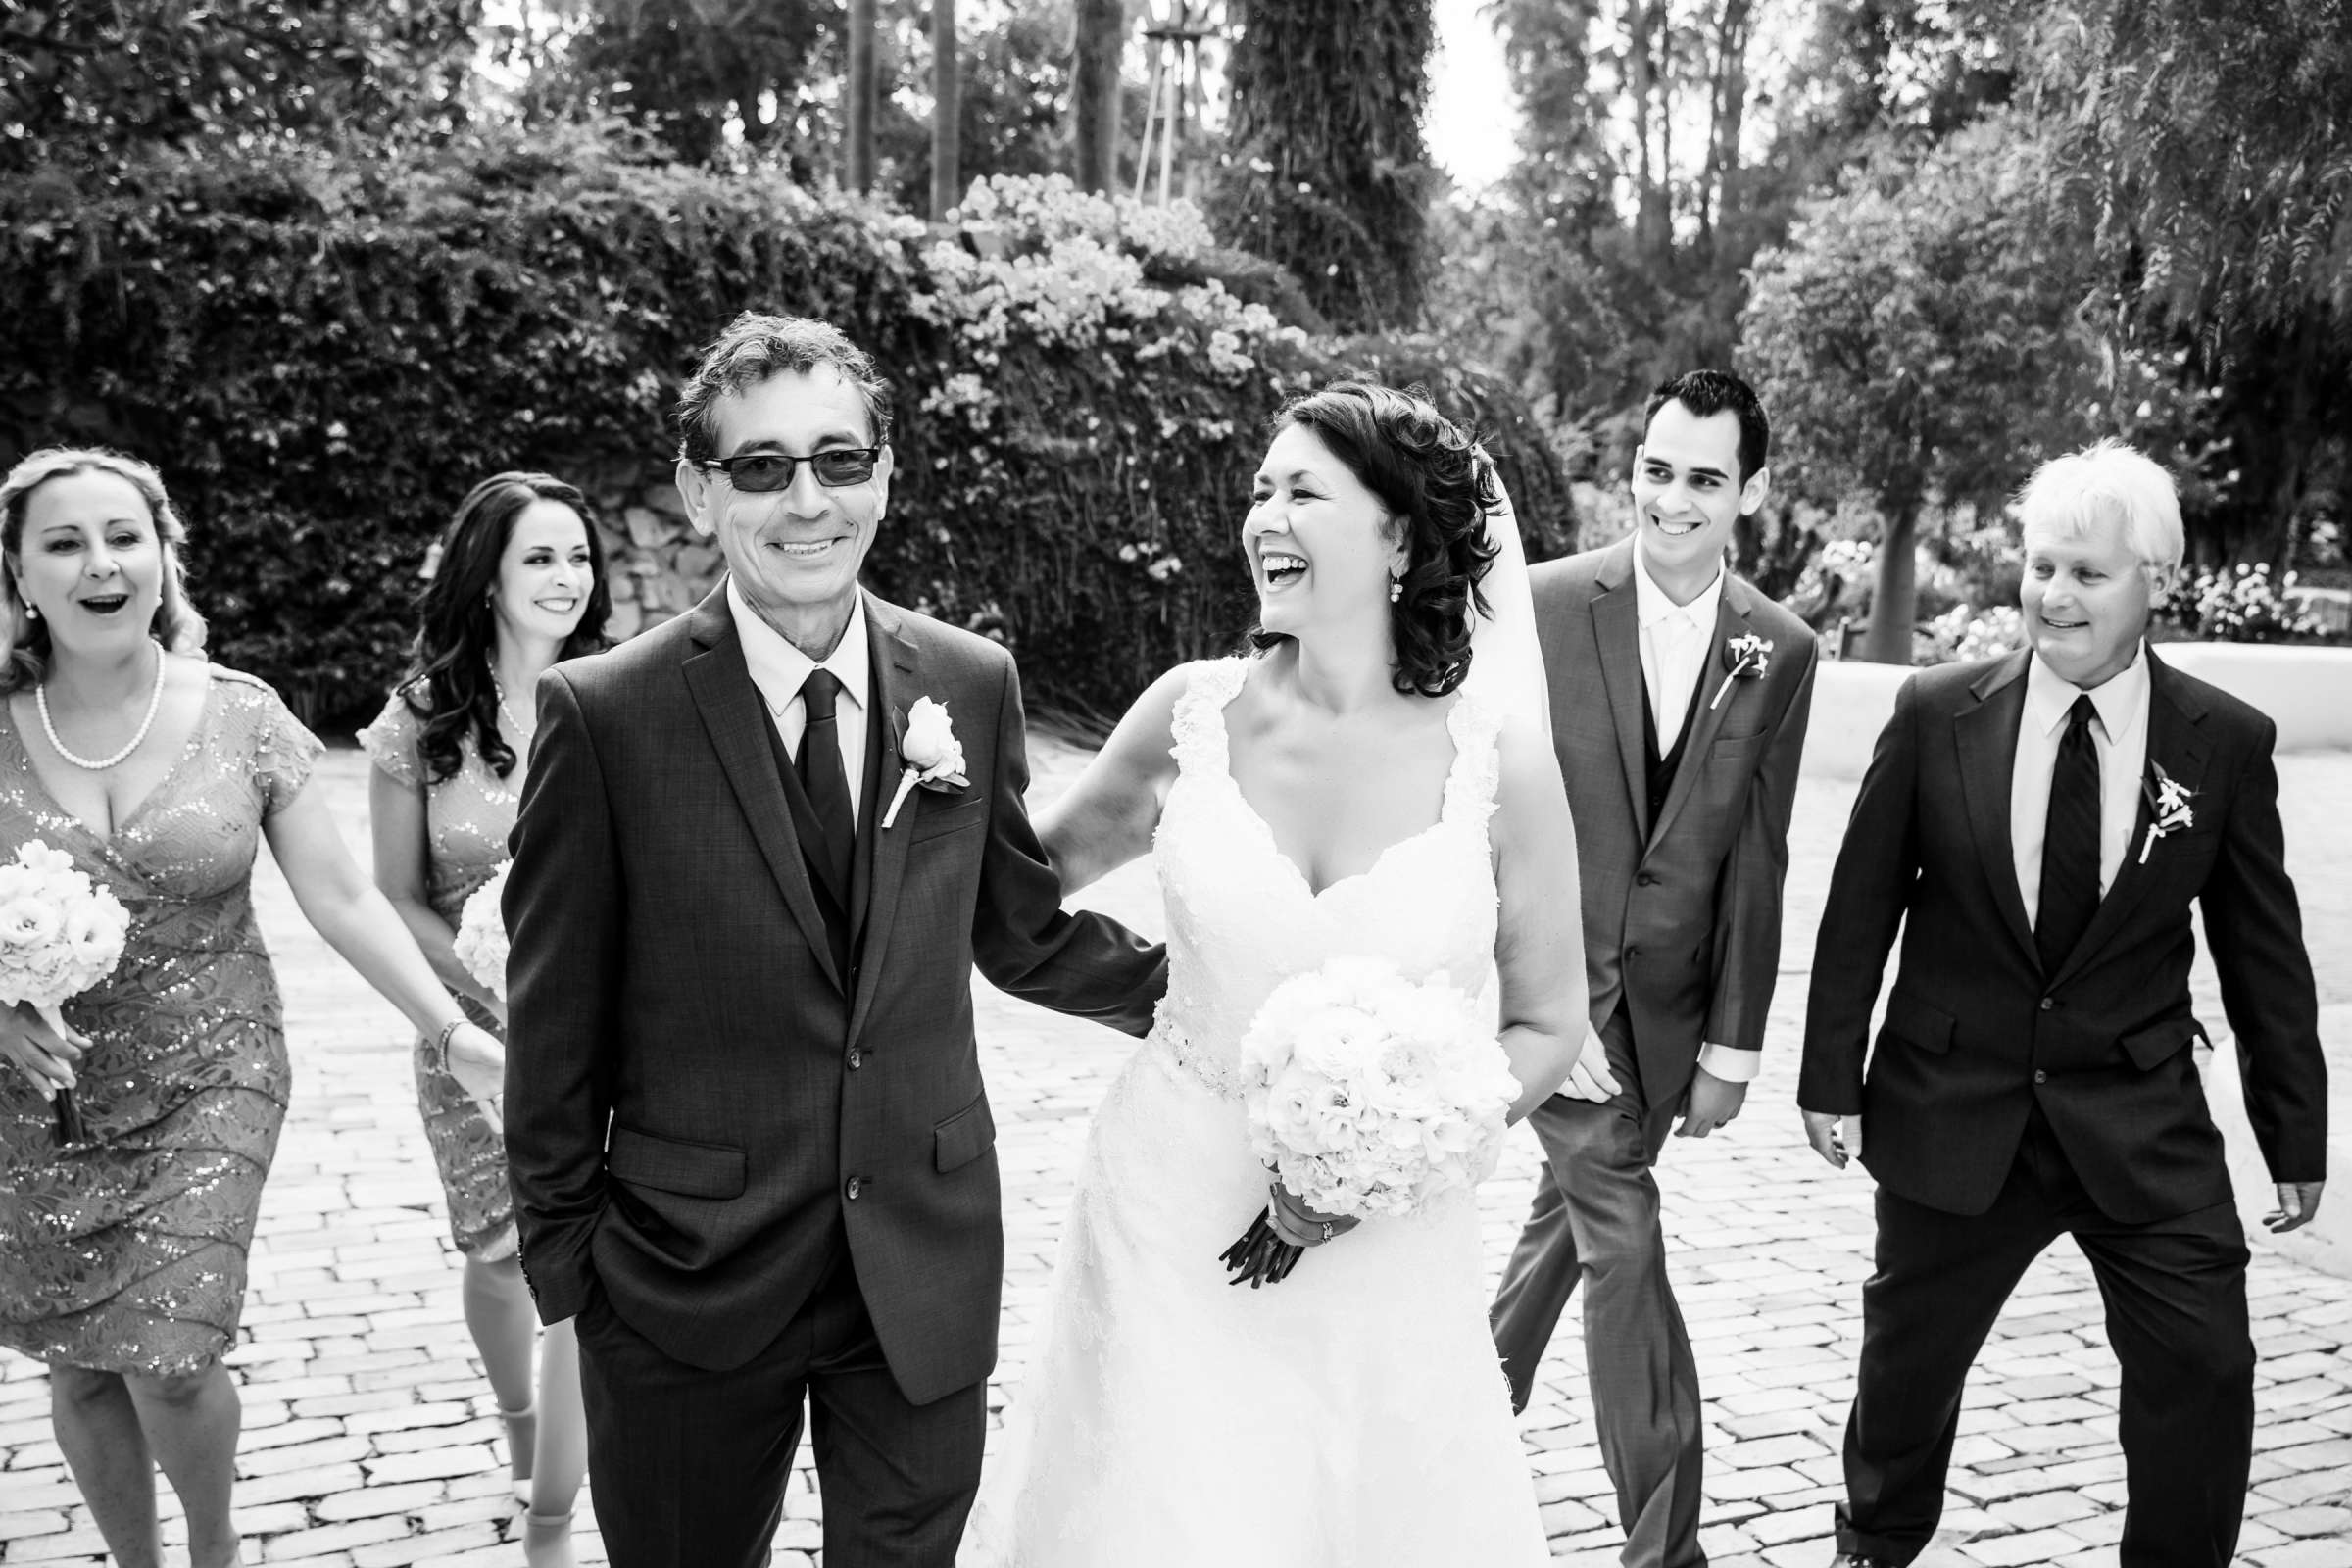 Rancho Buena Vista Adobe Wedding, Ellinor and Frank Wedding Photo #8 by True Photography